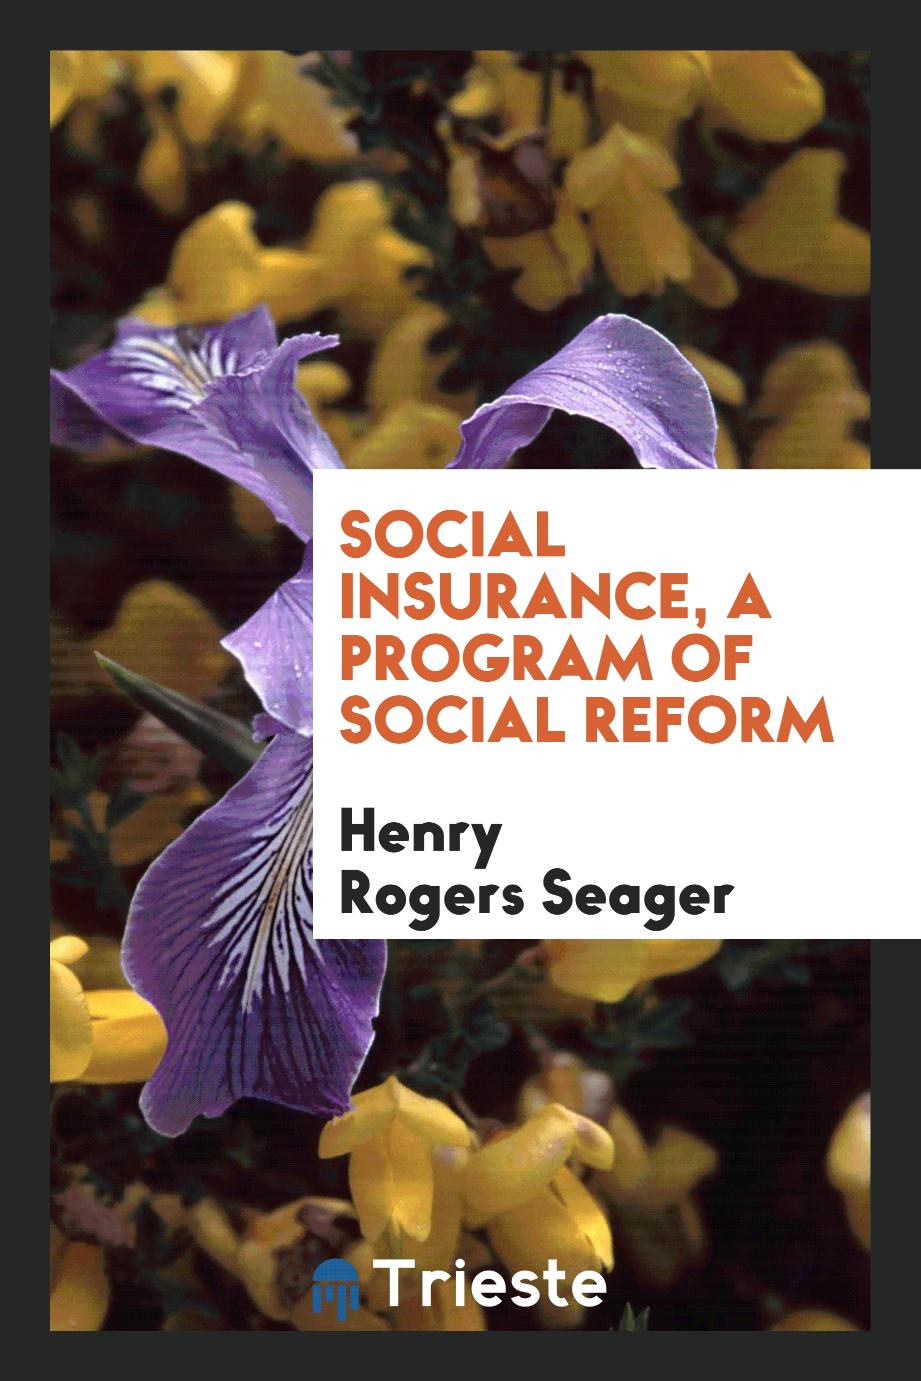 Social insurance, a program of social reform